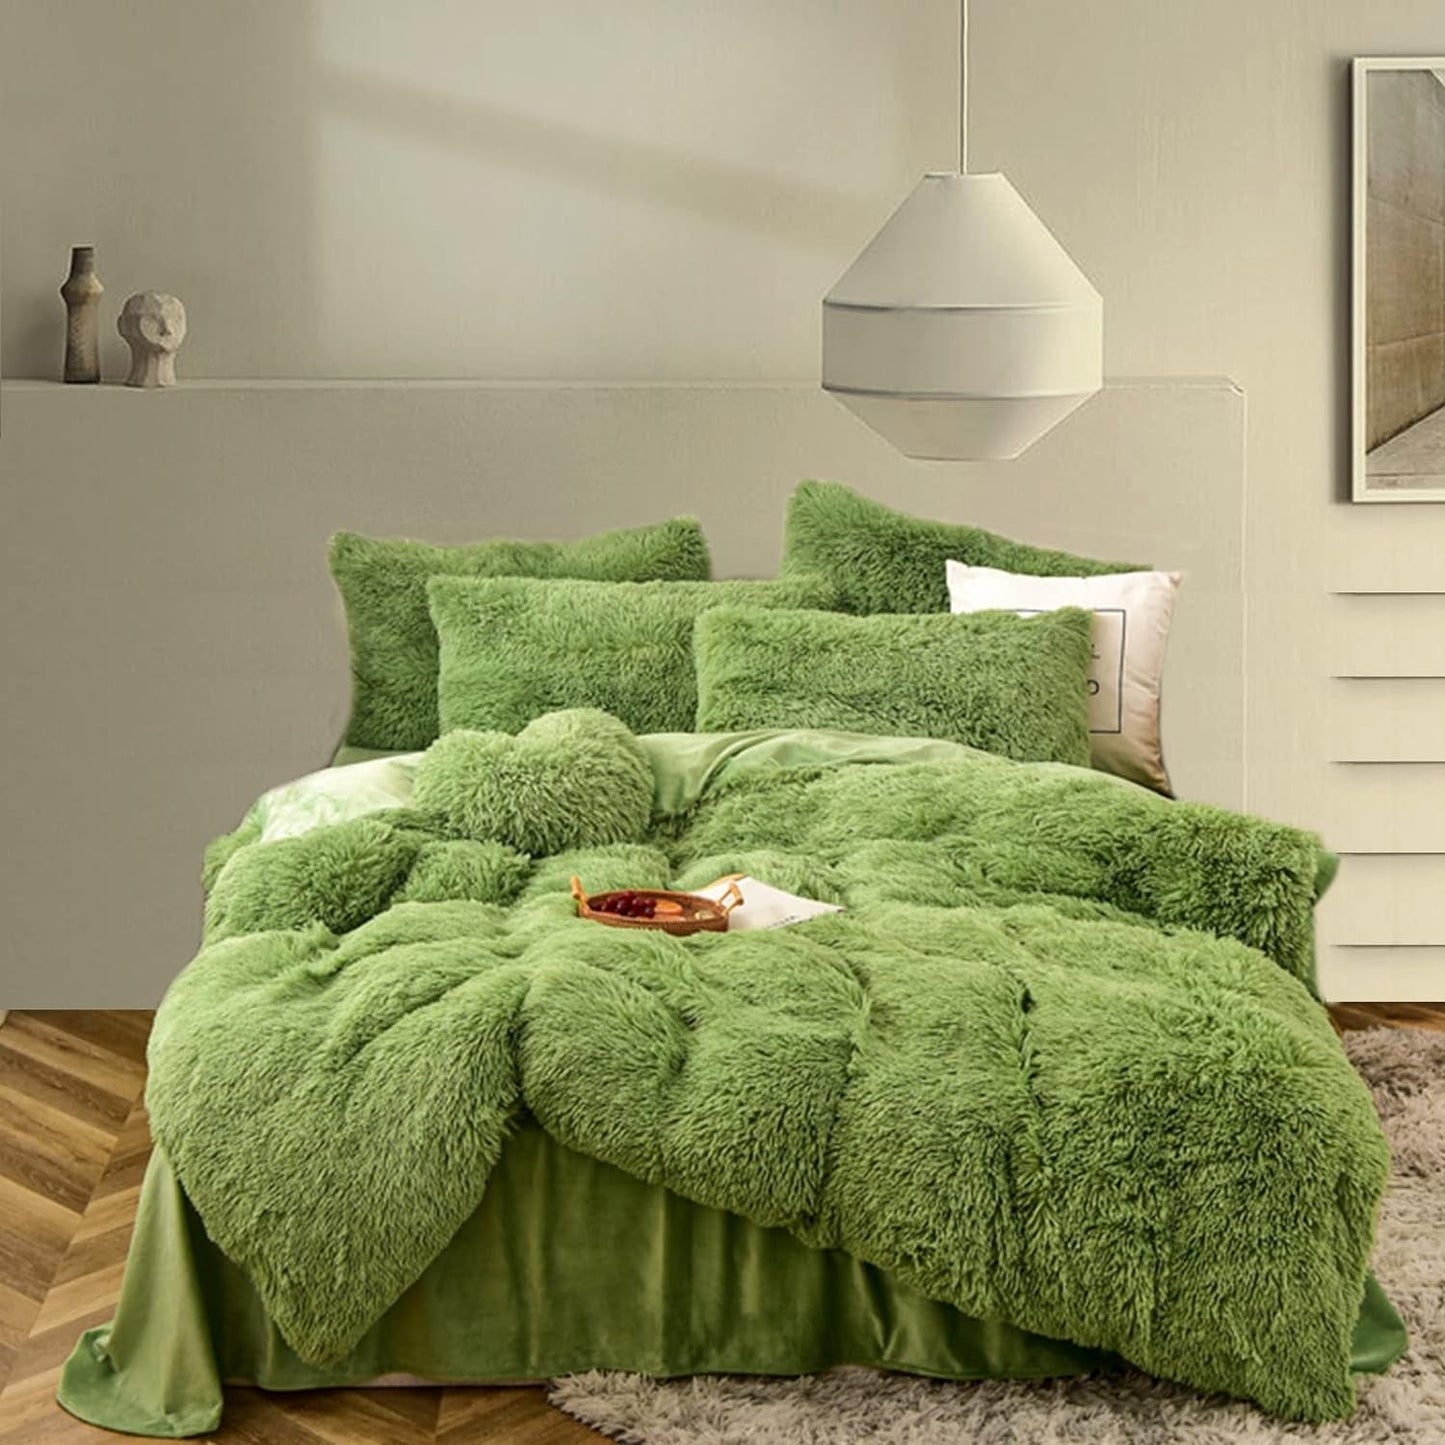 Morromorn Fluffy Comforter Duvet Cover Set, 5 Pcs Bedding Sets Faux Fur Plush Velvet Shaggy Ultra Soft Luxury for King Cal King Size Black